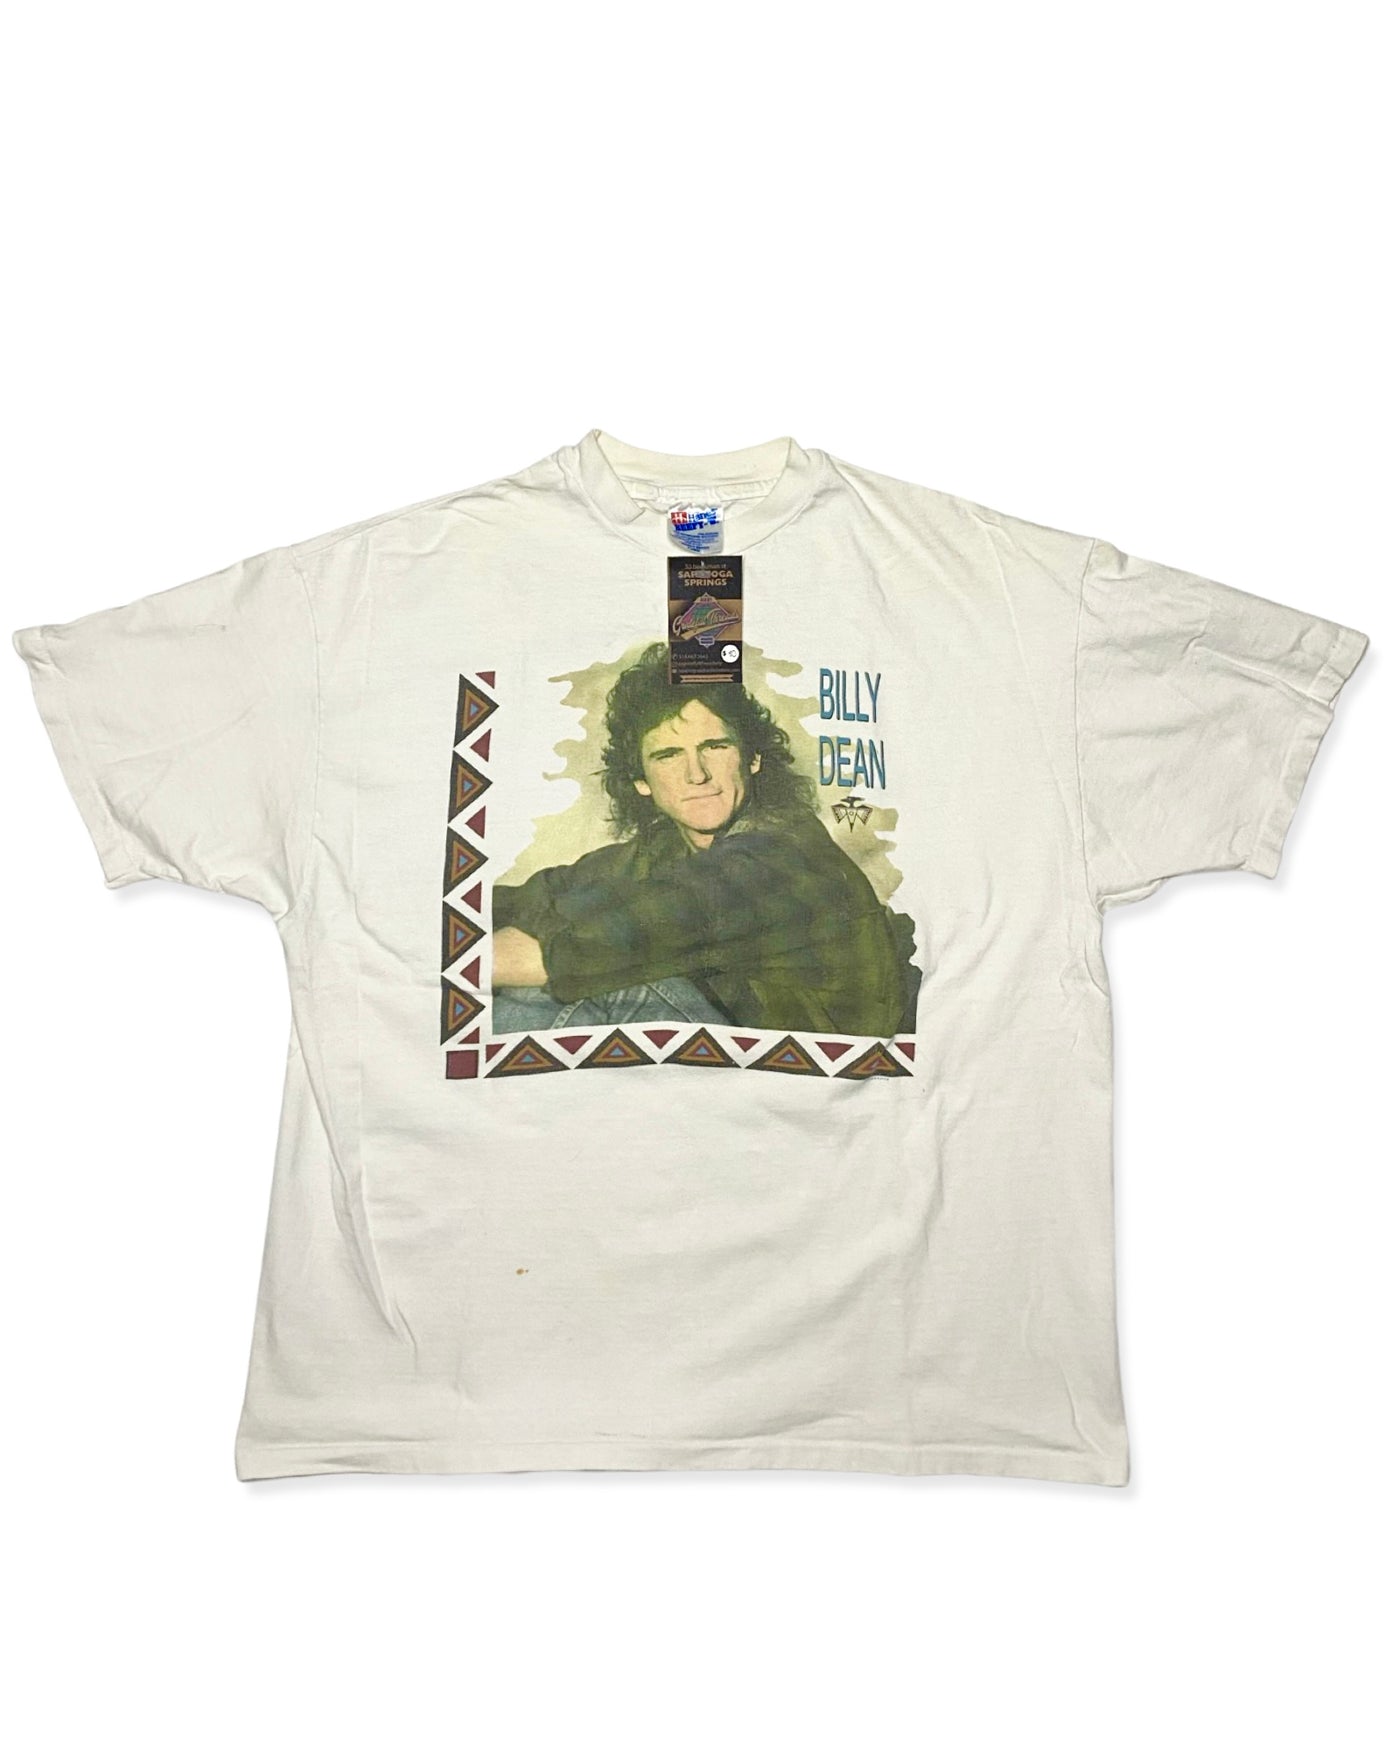 Vintage 90s Billy Dean Tour T-Shirt